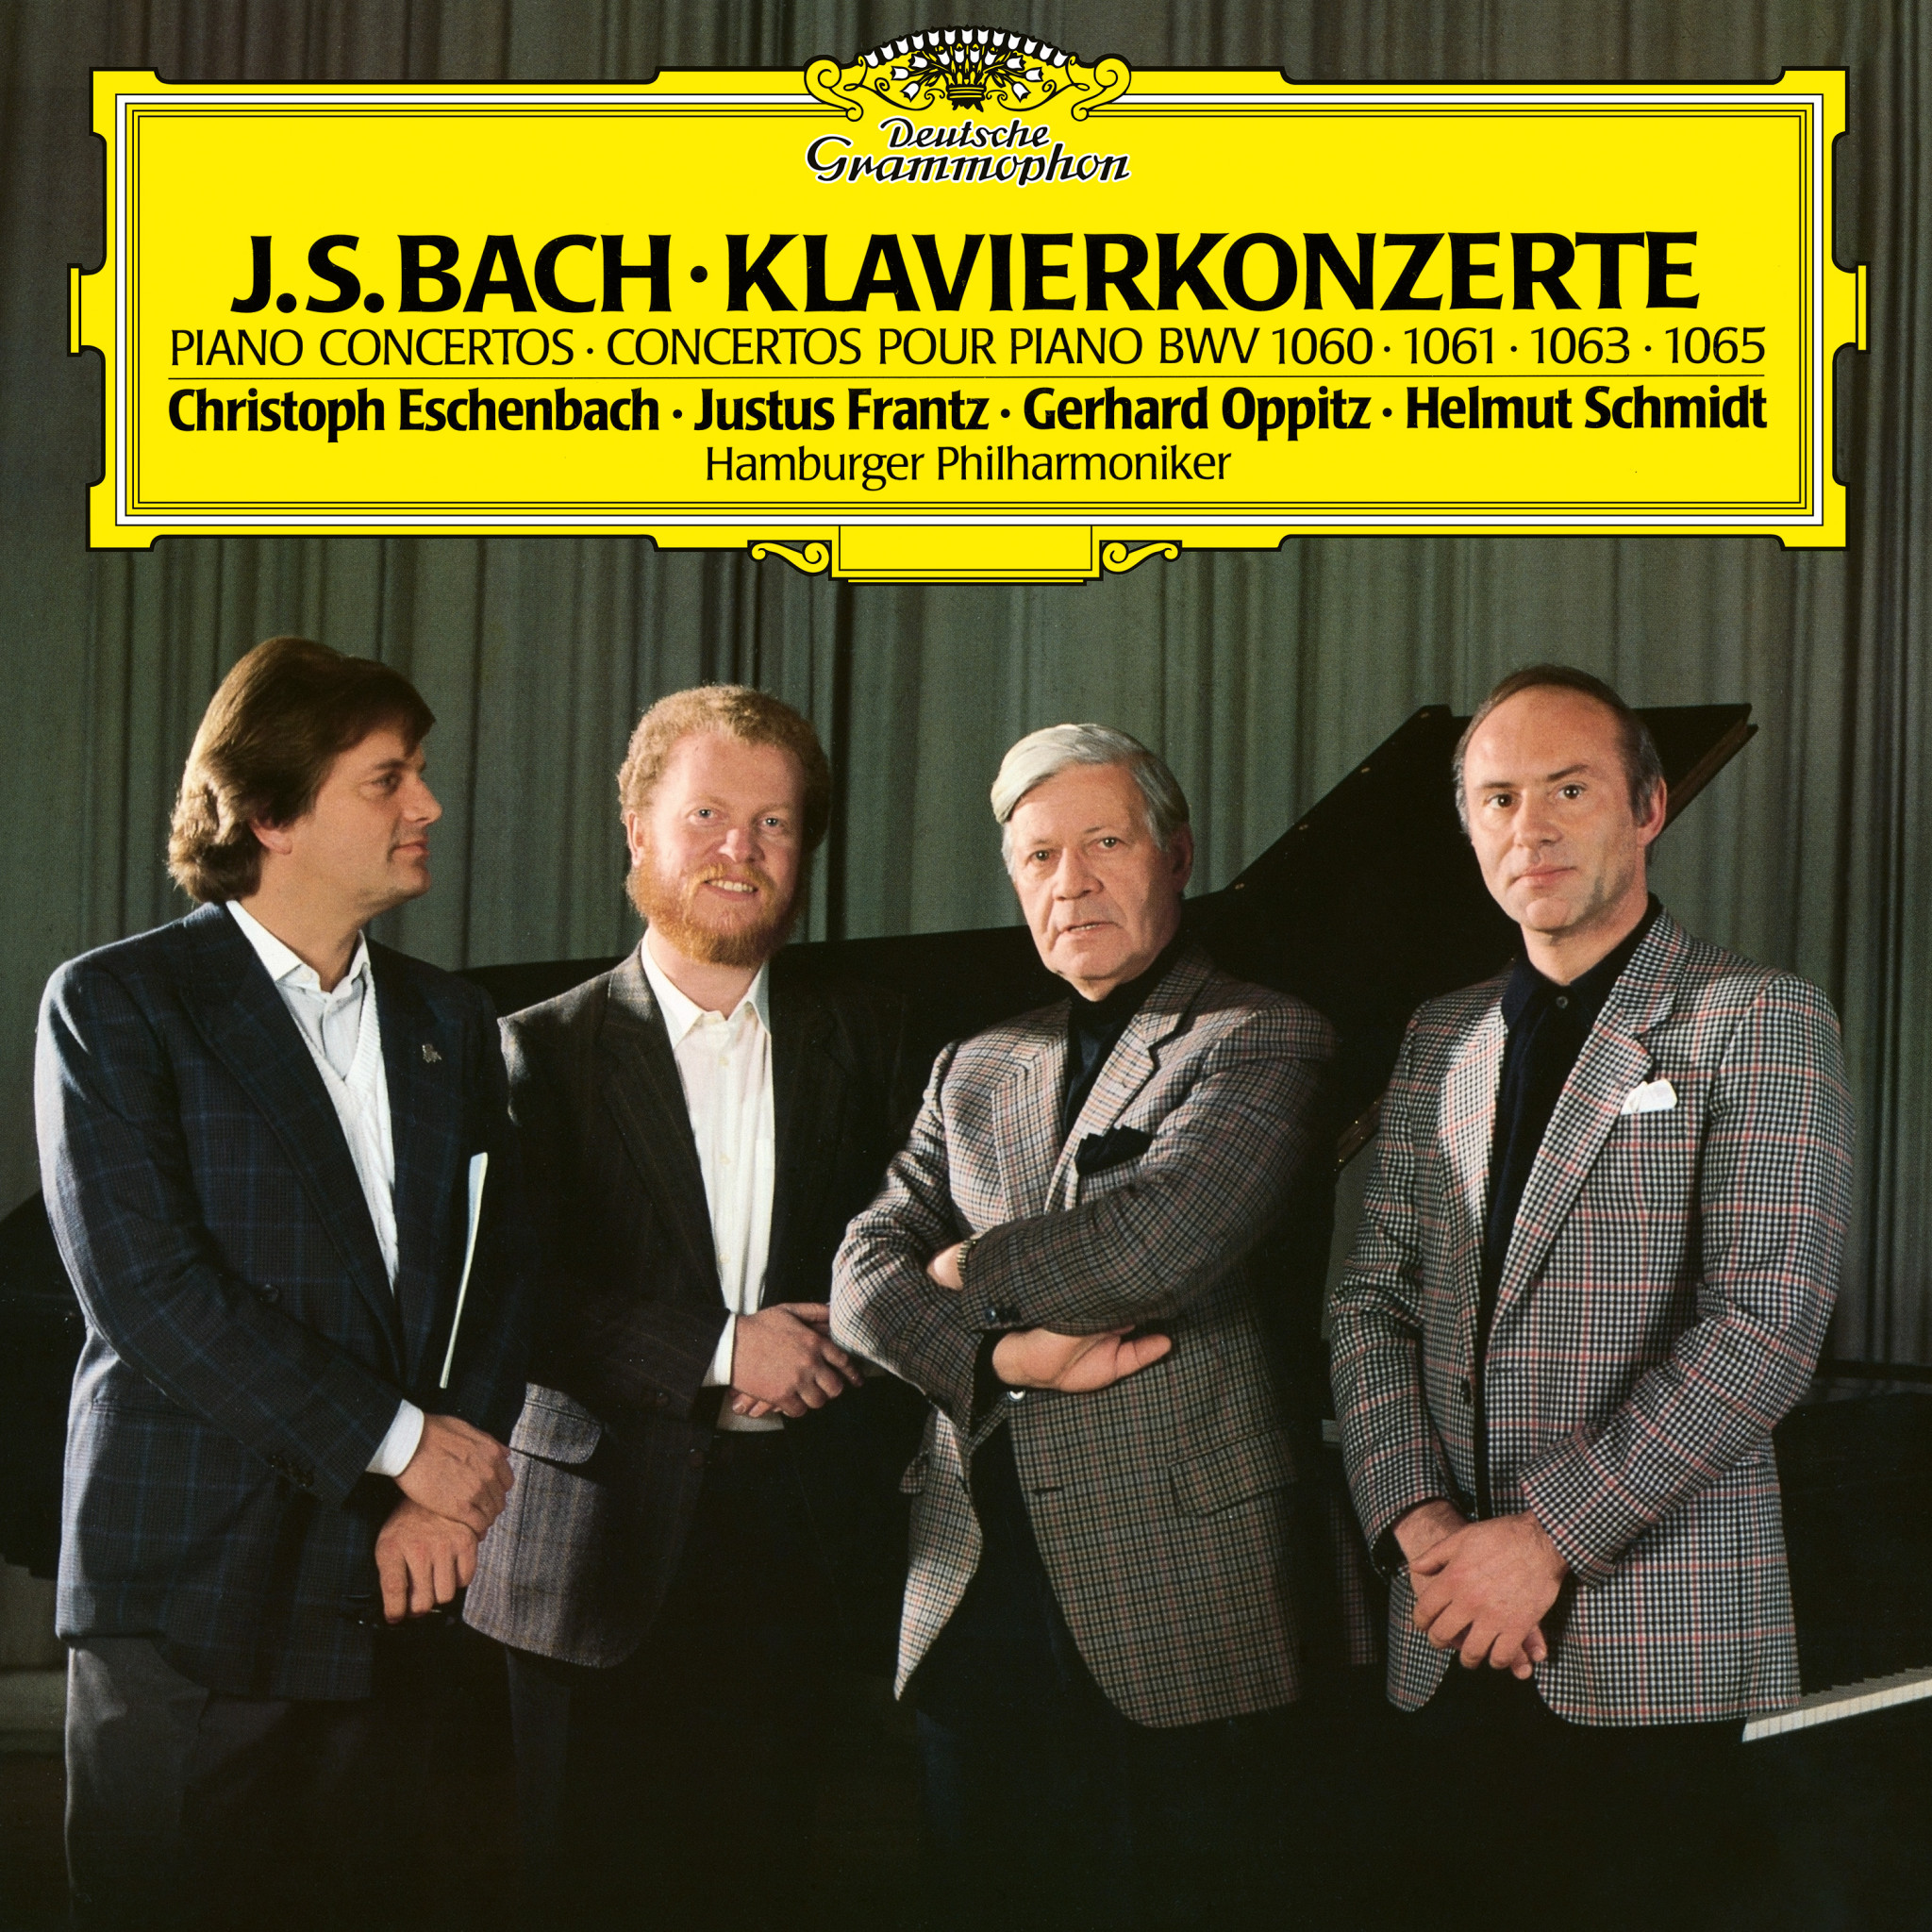 J. S. Bach Klavierkonzerte BWV 1068, 1061, 1060, 1063